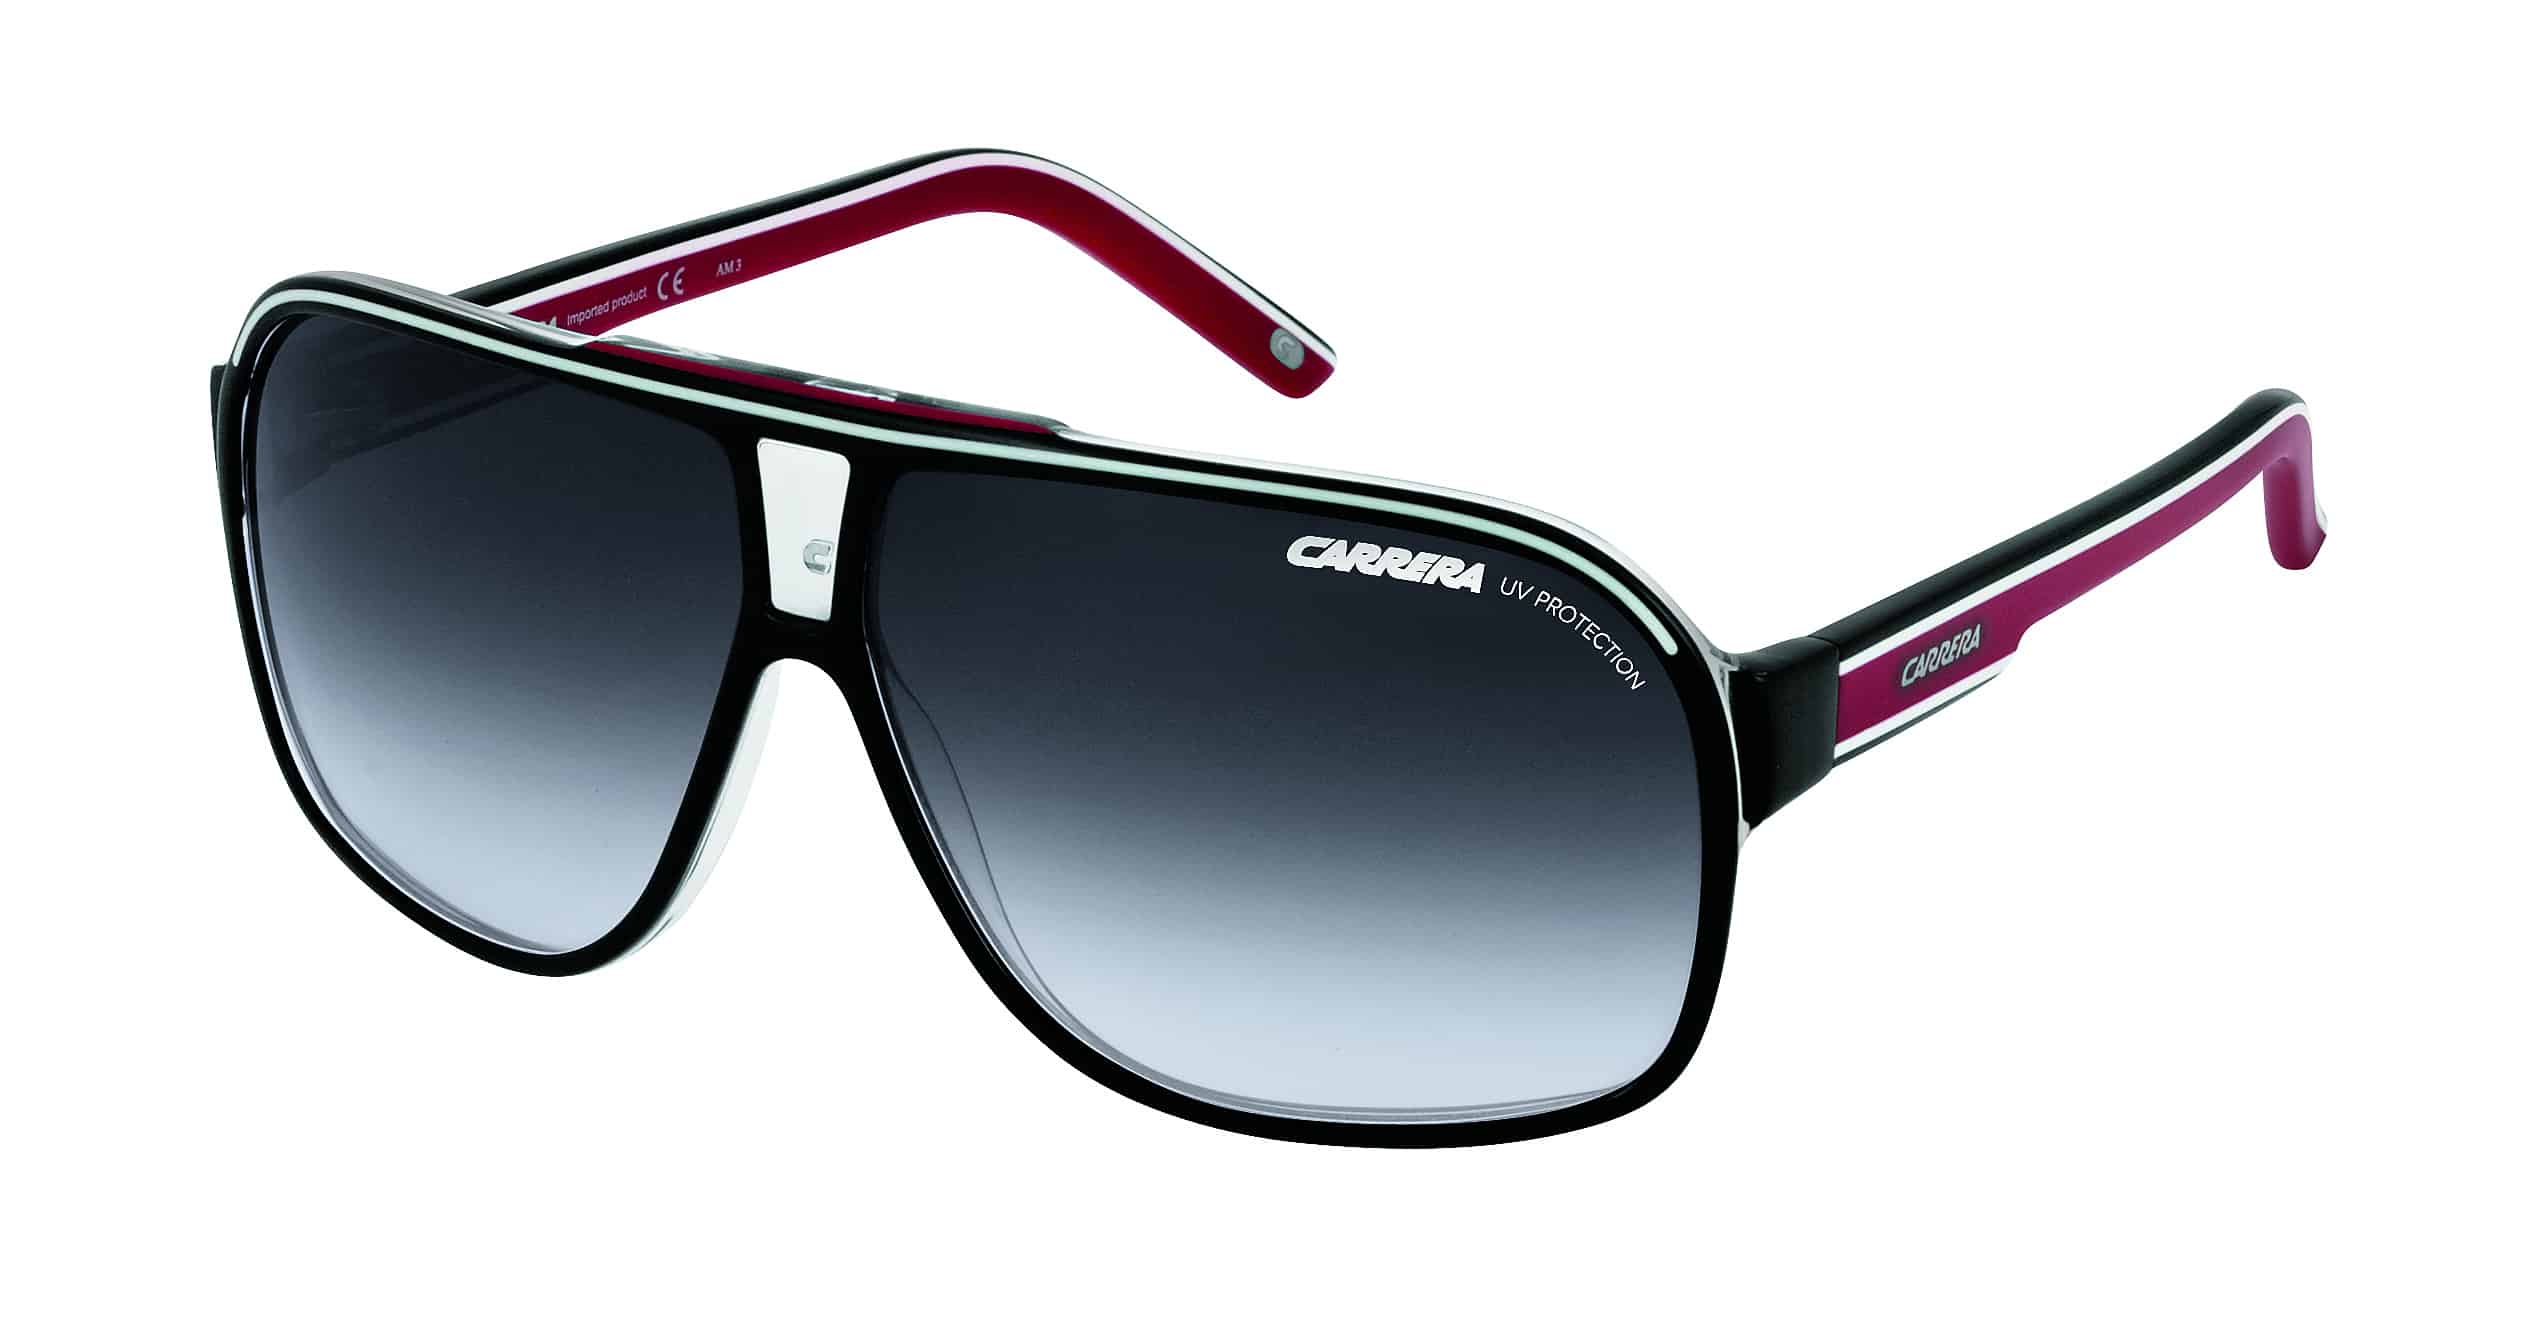 GRAND PRIX 2 BKWHRED CARRERA Sunglasses | George & Matilda Eyecare and Optometrist